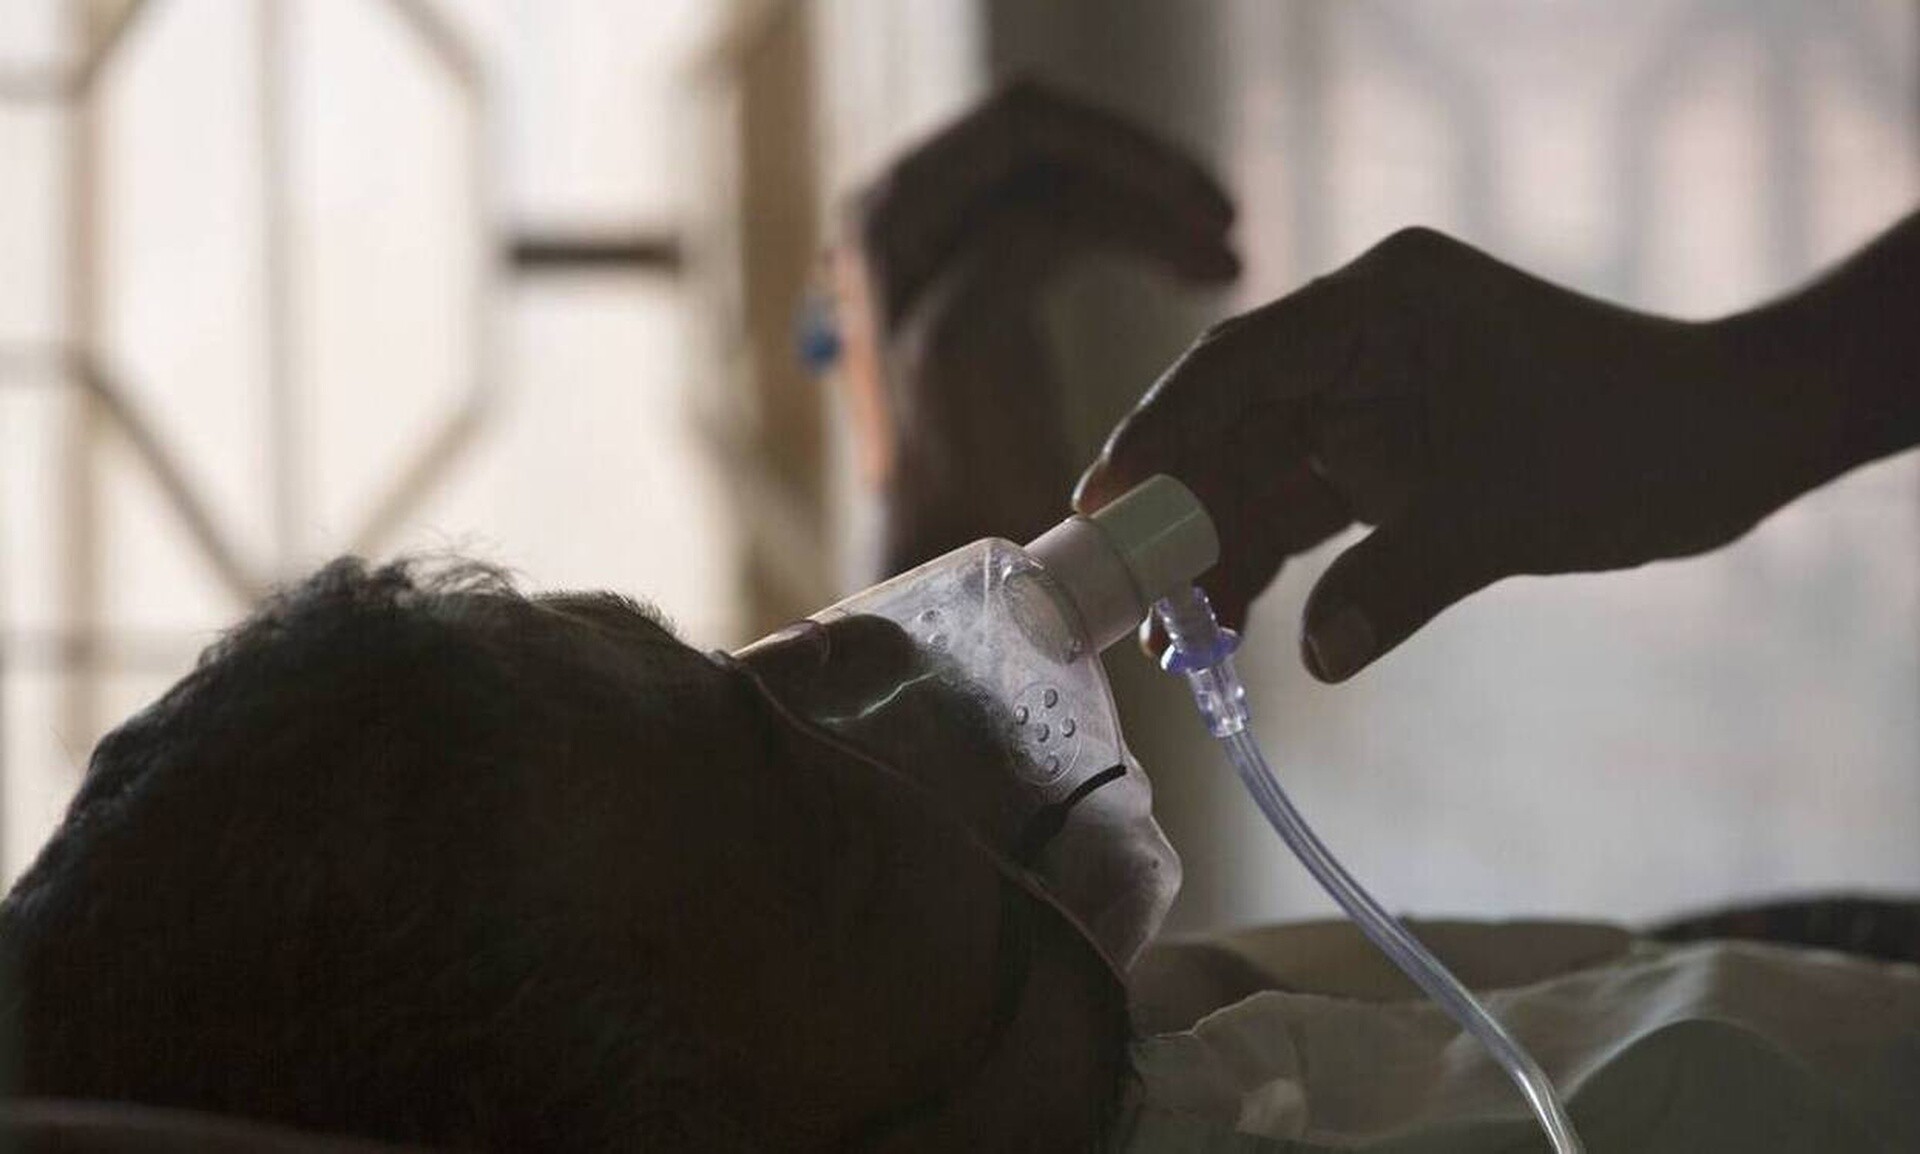 Φυματίωση: Παραμένει μείζον πρόβλημα δημόσιας υγείας - Παιδιά το 10% των νέων διαγνώσεων